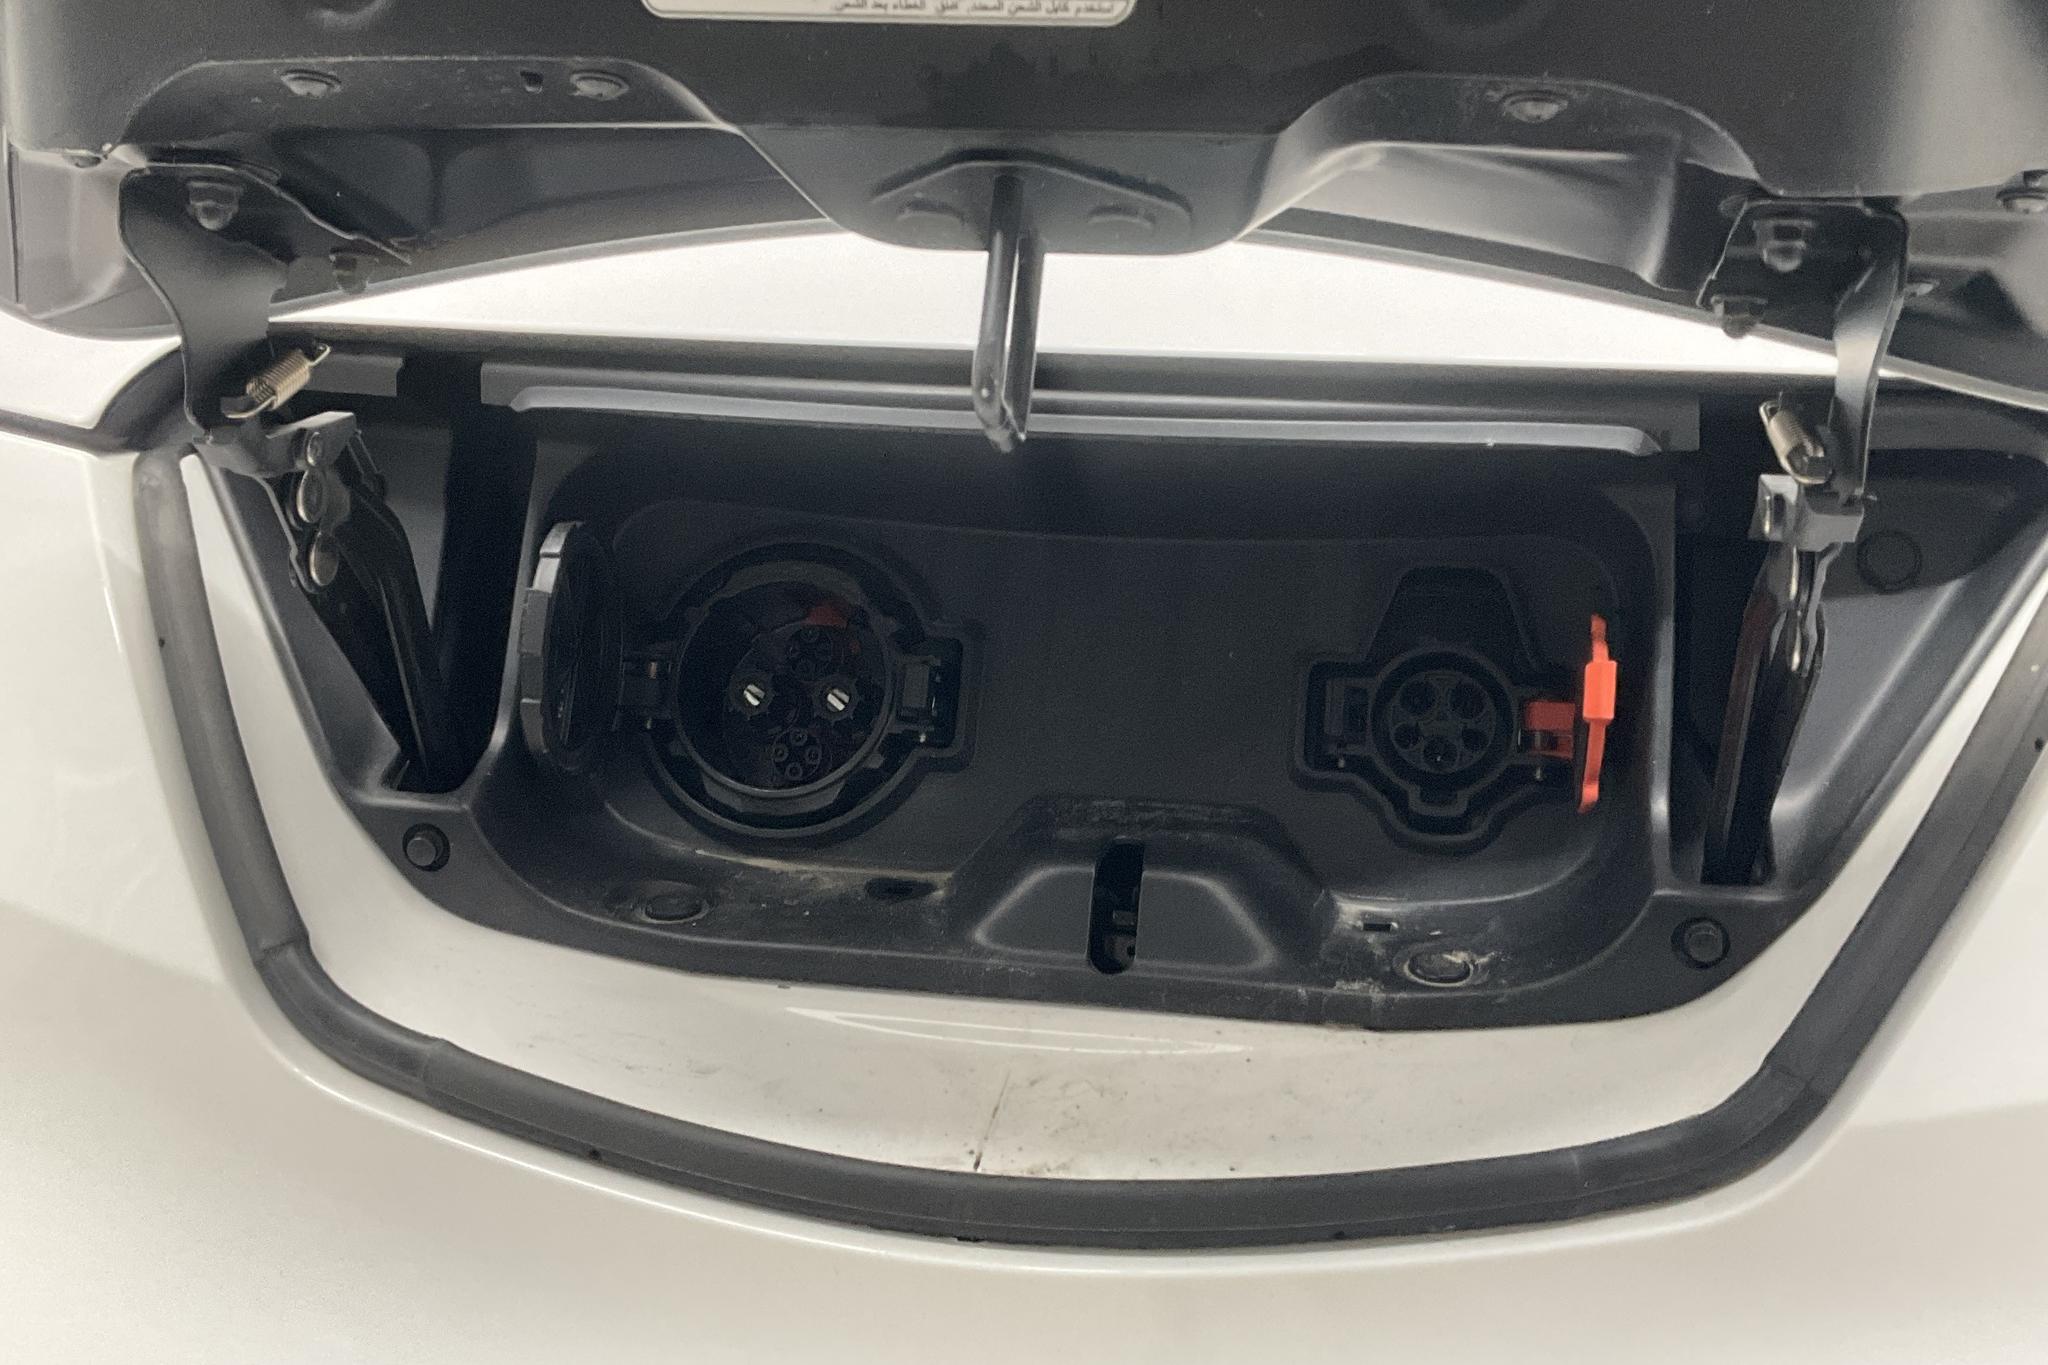 Nissan e-NV200 40,0 kWh (109hk) - 1 548 mil - Automat - vit - 2019